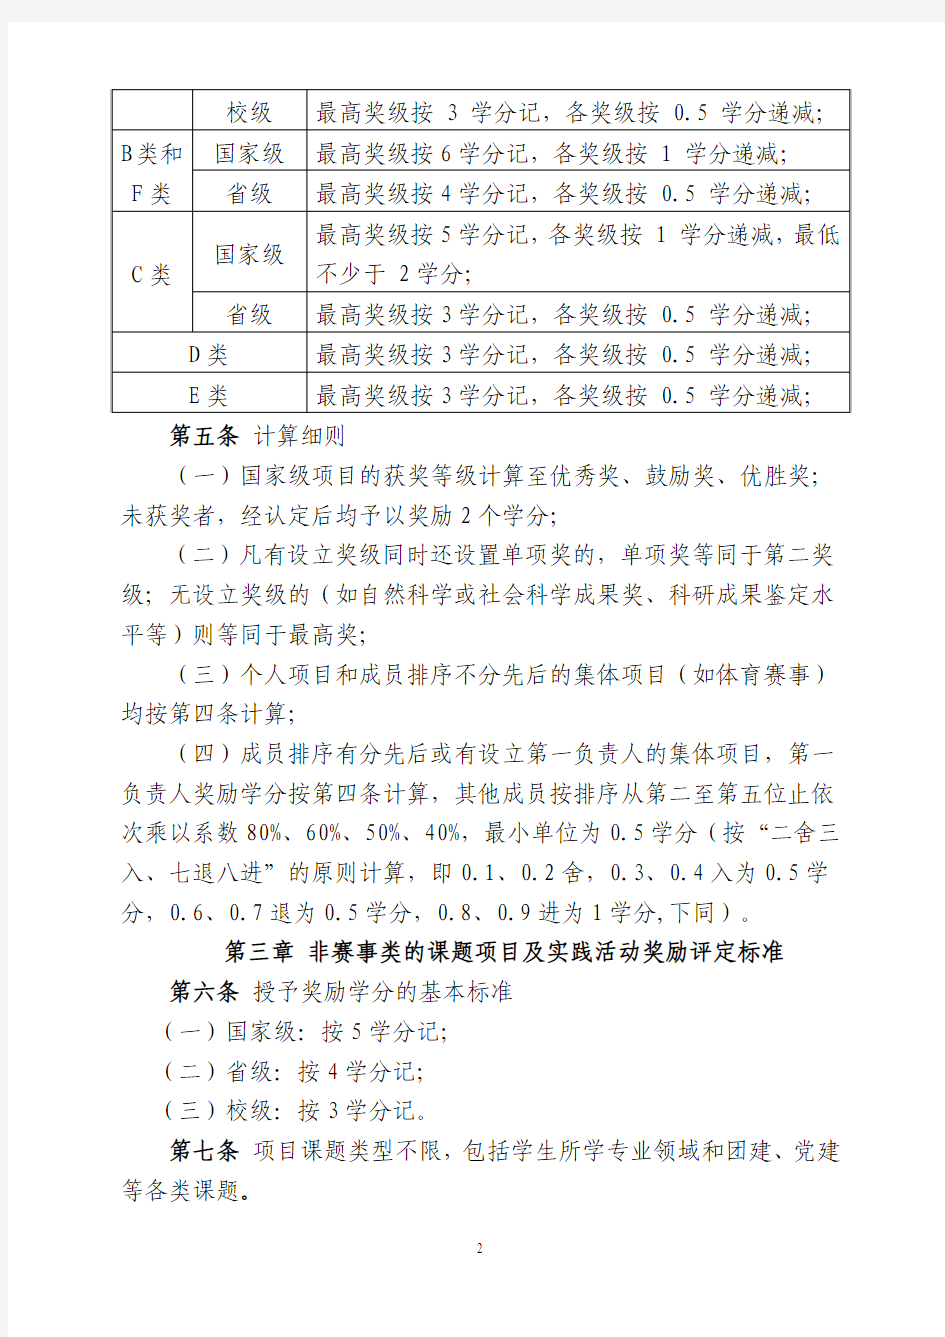 福建农林大学本科实践奖励学分实施办法(征求意见稿2013.6.27)